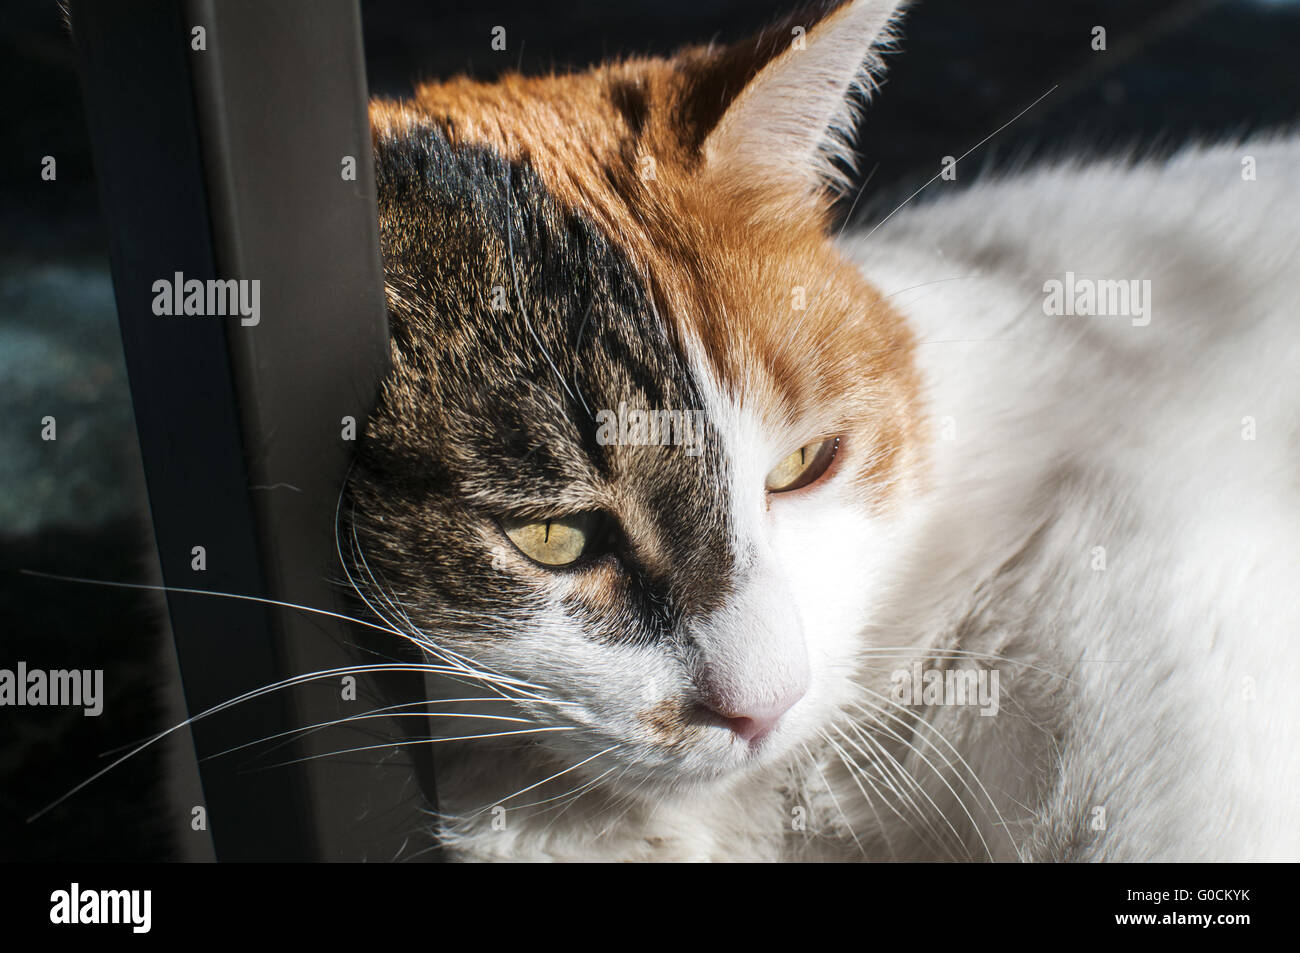 Testa di gatto estremamente closeup su home contesto Foto Stock